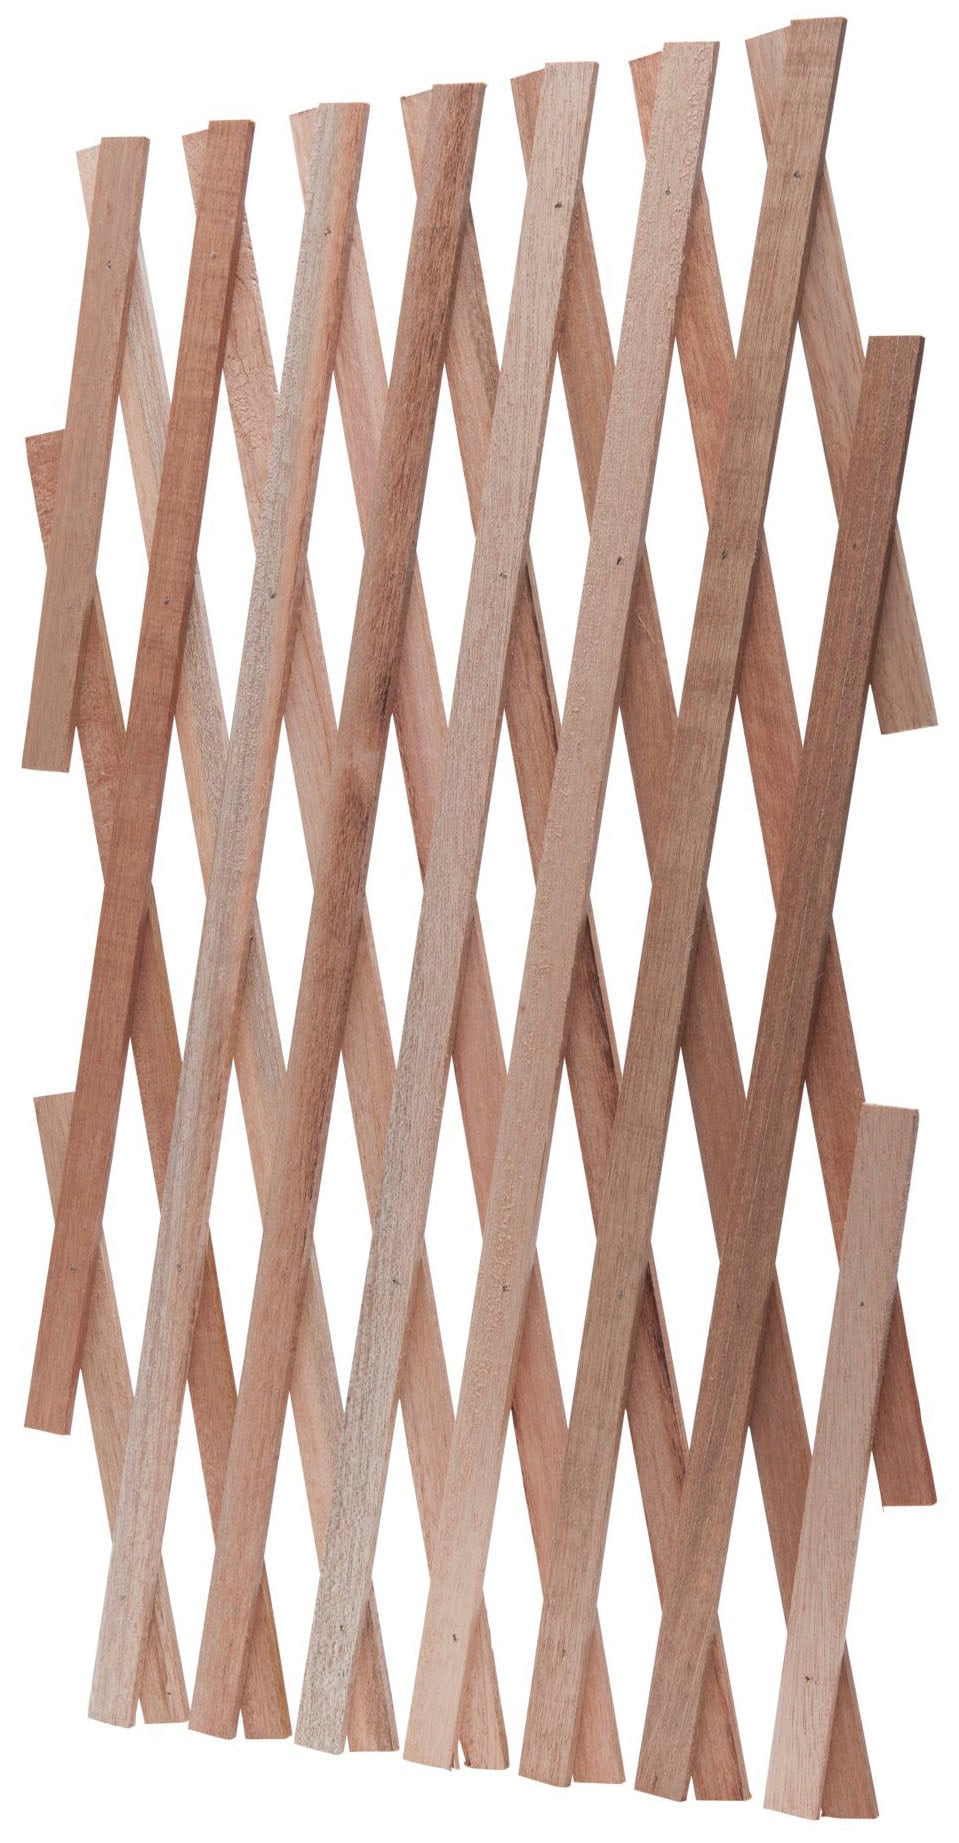 Windhager Sichtschutzelement, Holzspalier aus unbehandeltem Holz, L: 1,8 m günstig online kaufen